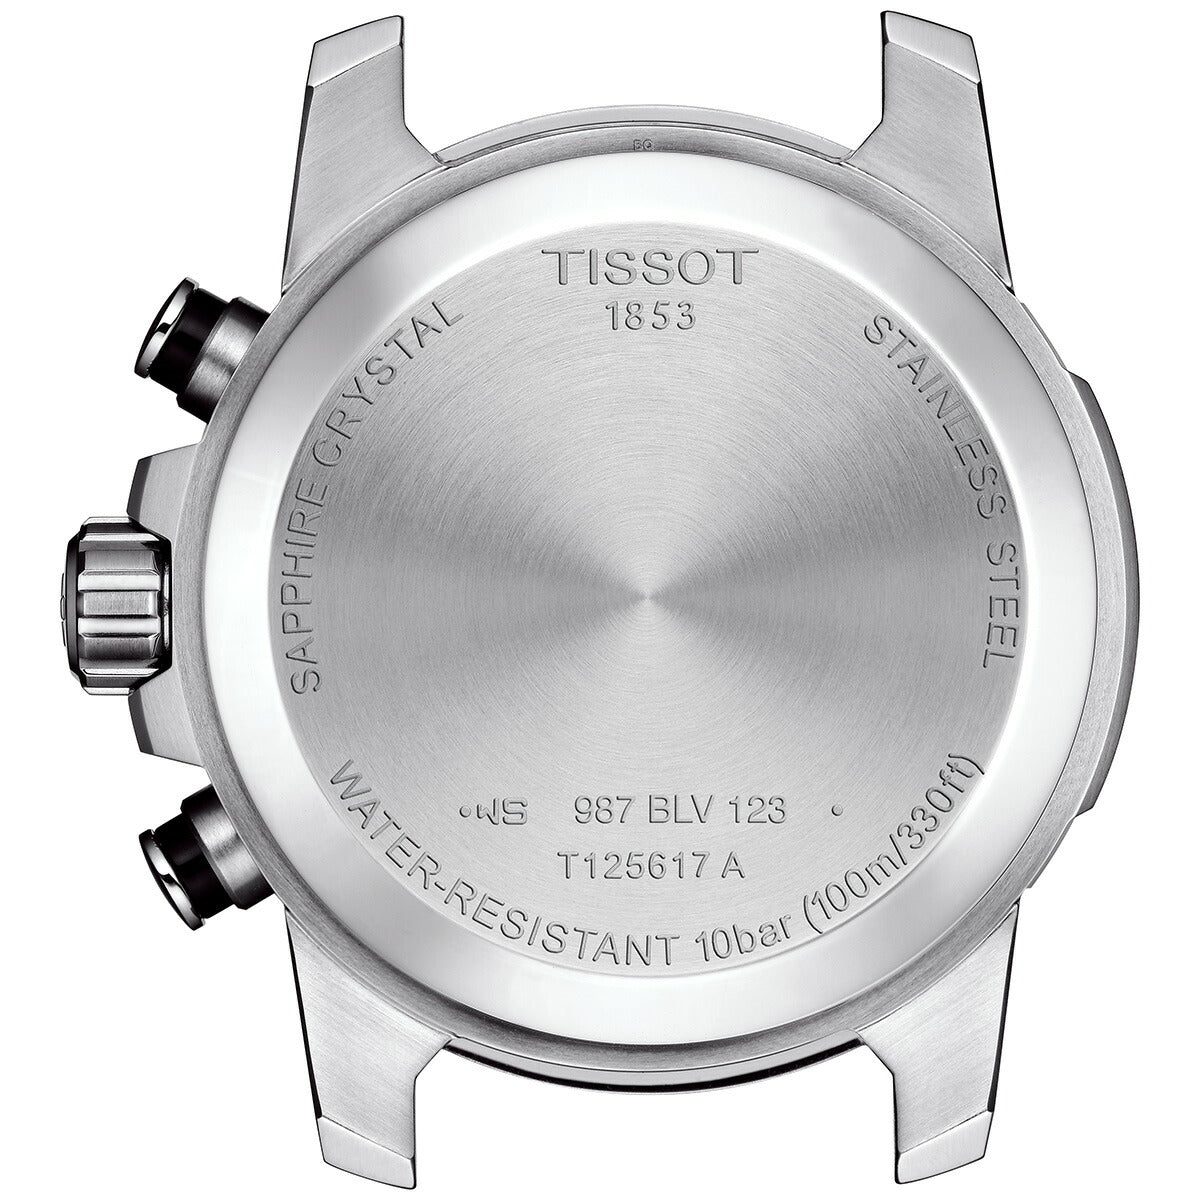 ティソ TISSOT 腕時計 メンズ スーパースポーツ クロノ SUPERSPORT CHRONO クロノグラフ T125.617.11.051.00